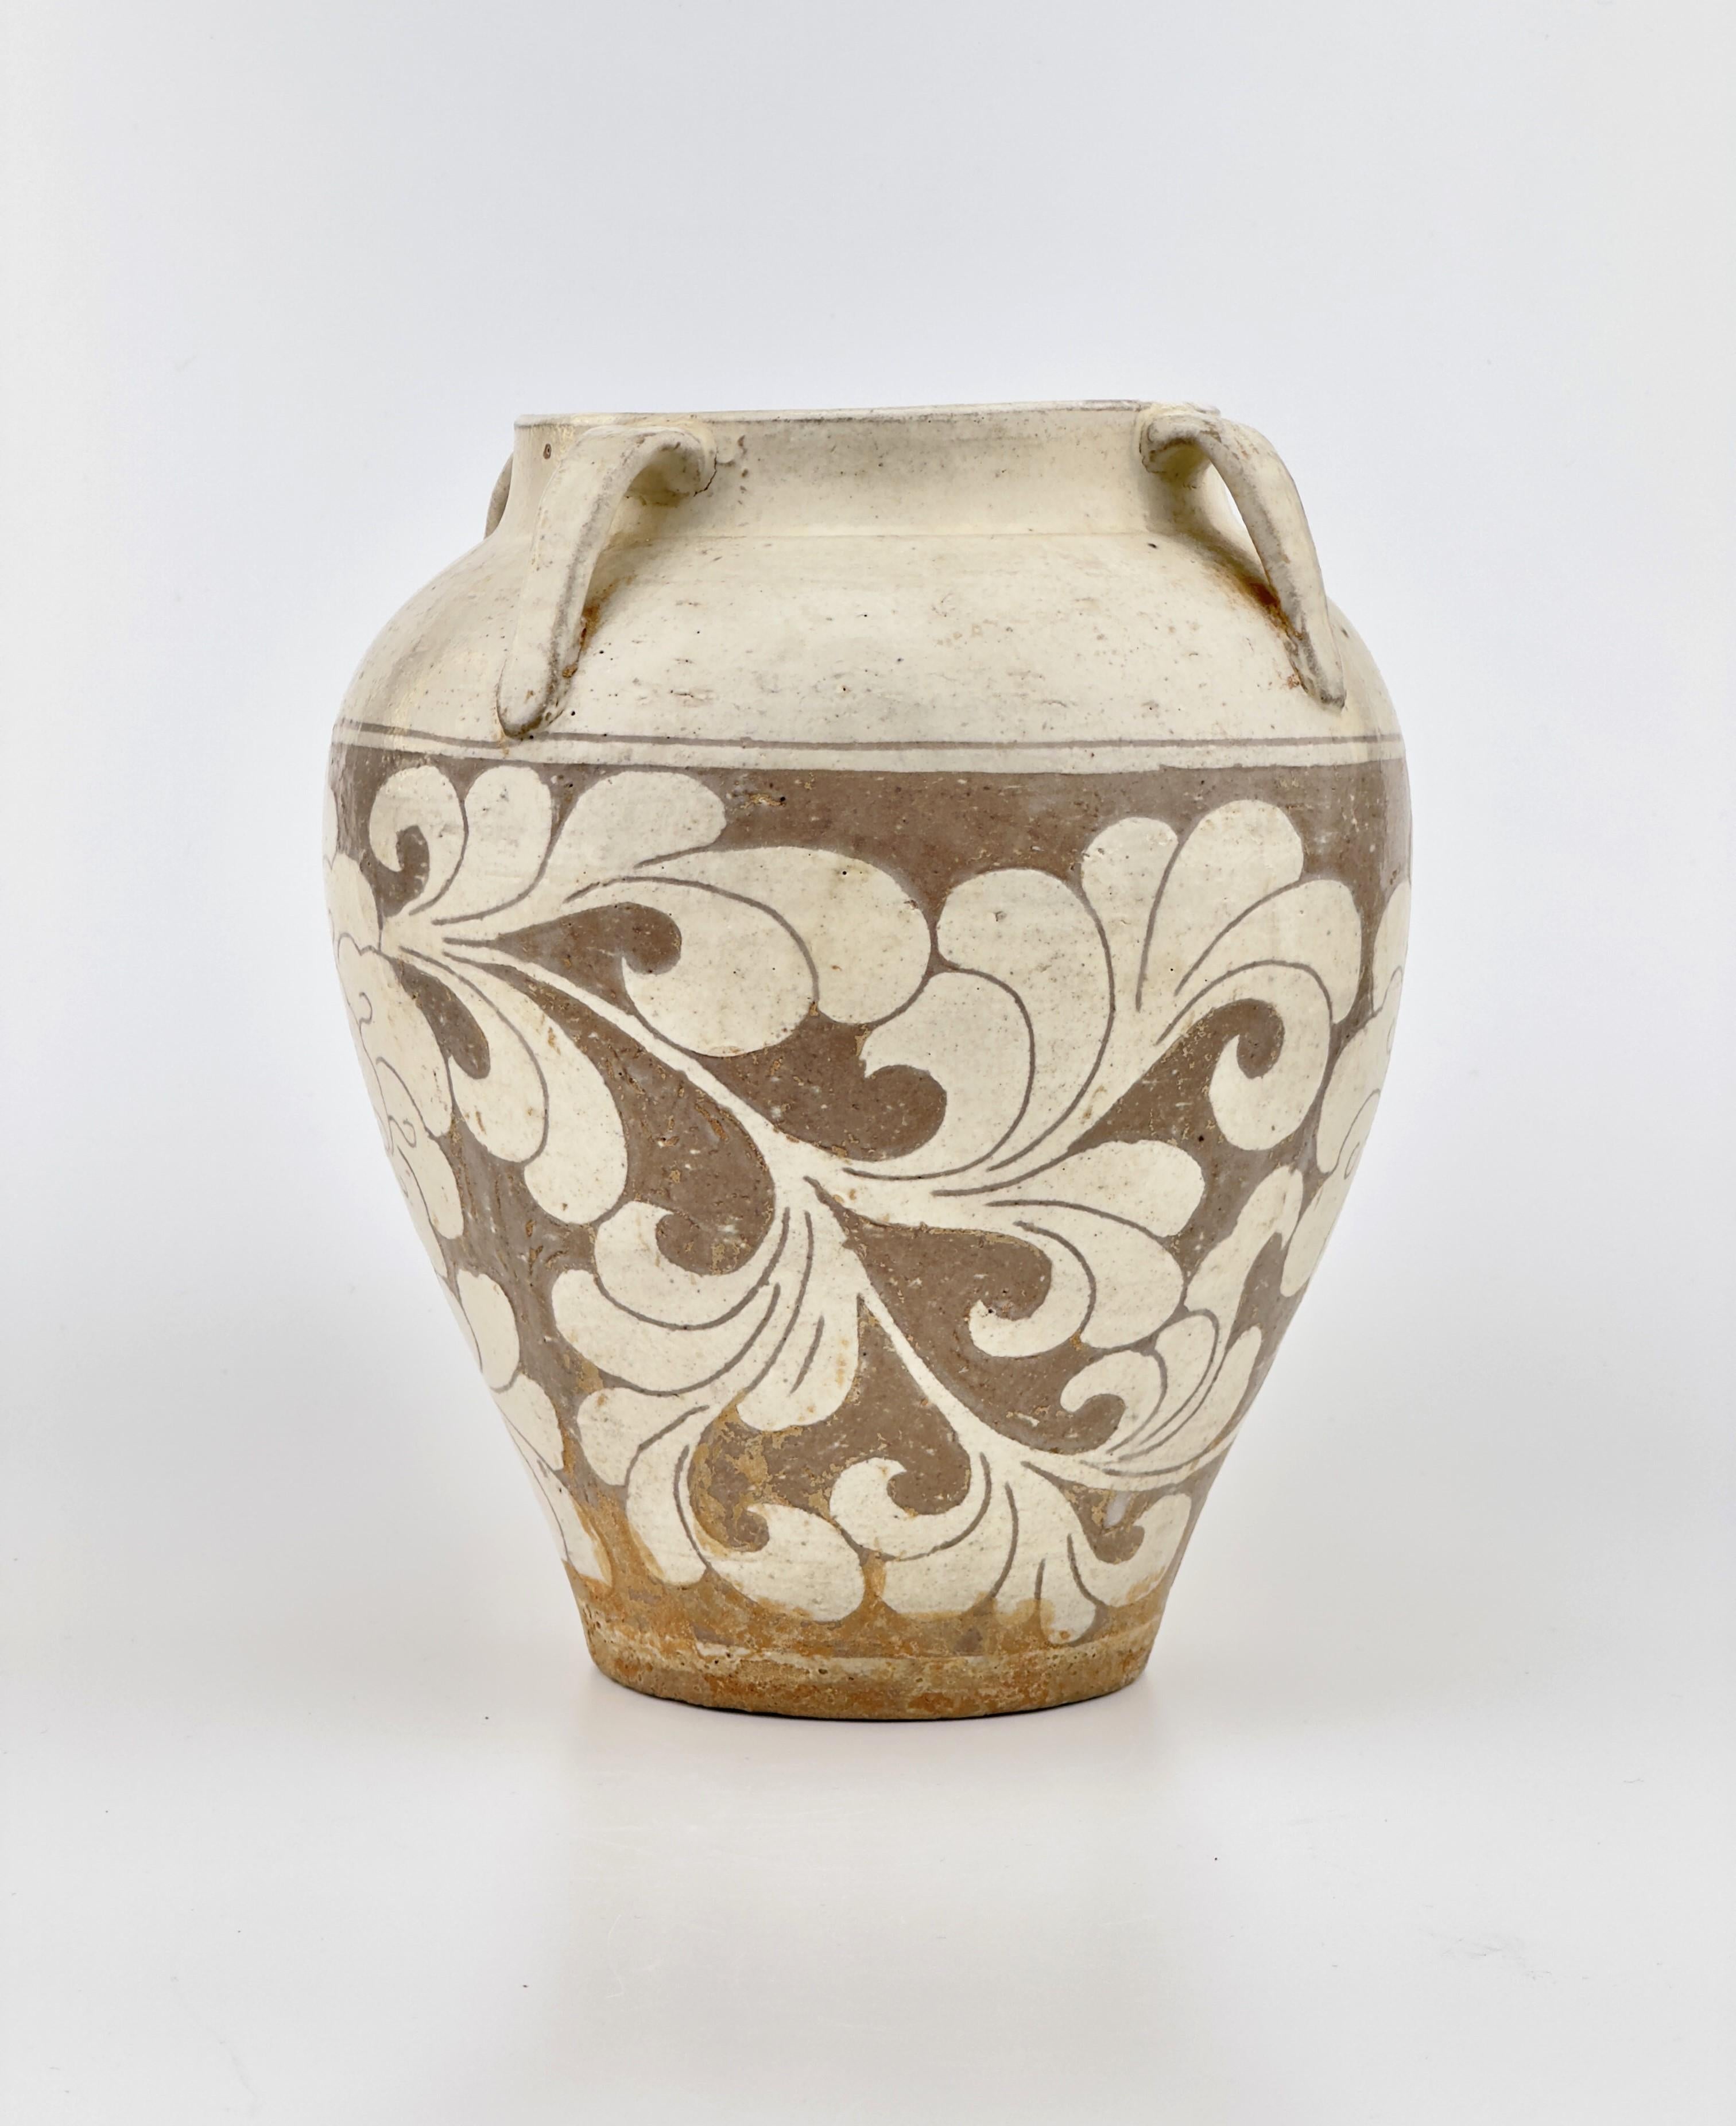 Dieses Gefäß weist ein geschnitztes Muster auf, das typisch für Cizhou-Ware ist. Es hat eine cremeweiße und braune Farbgebung und die auffällige Dekoration der Lotusblume, die ein häufiges Motiv in der chinesischen Kunst und Kultur ist und Reinheit